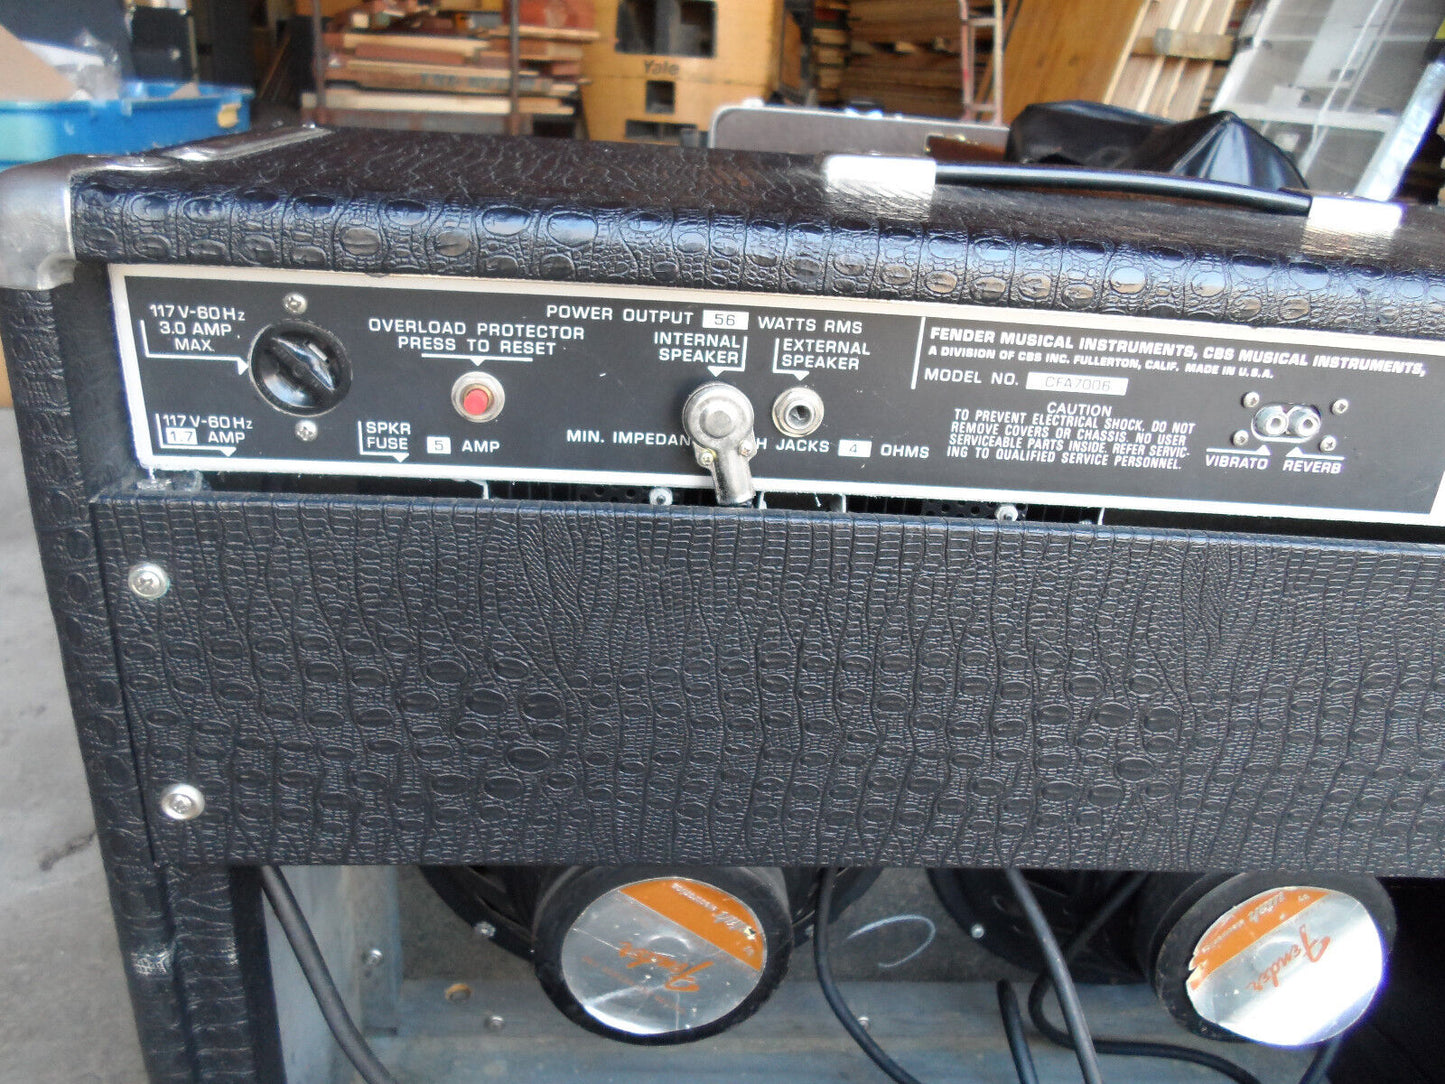 Vintage 1969  Fender Scorpio Alligator Tolex Amplifier